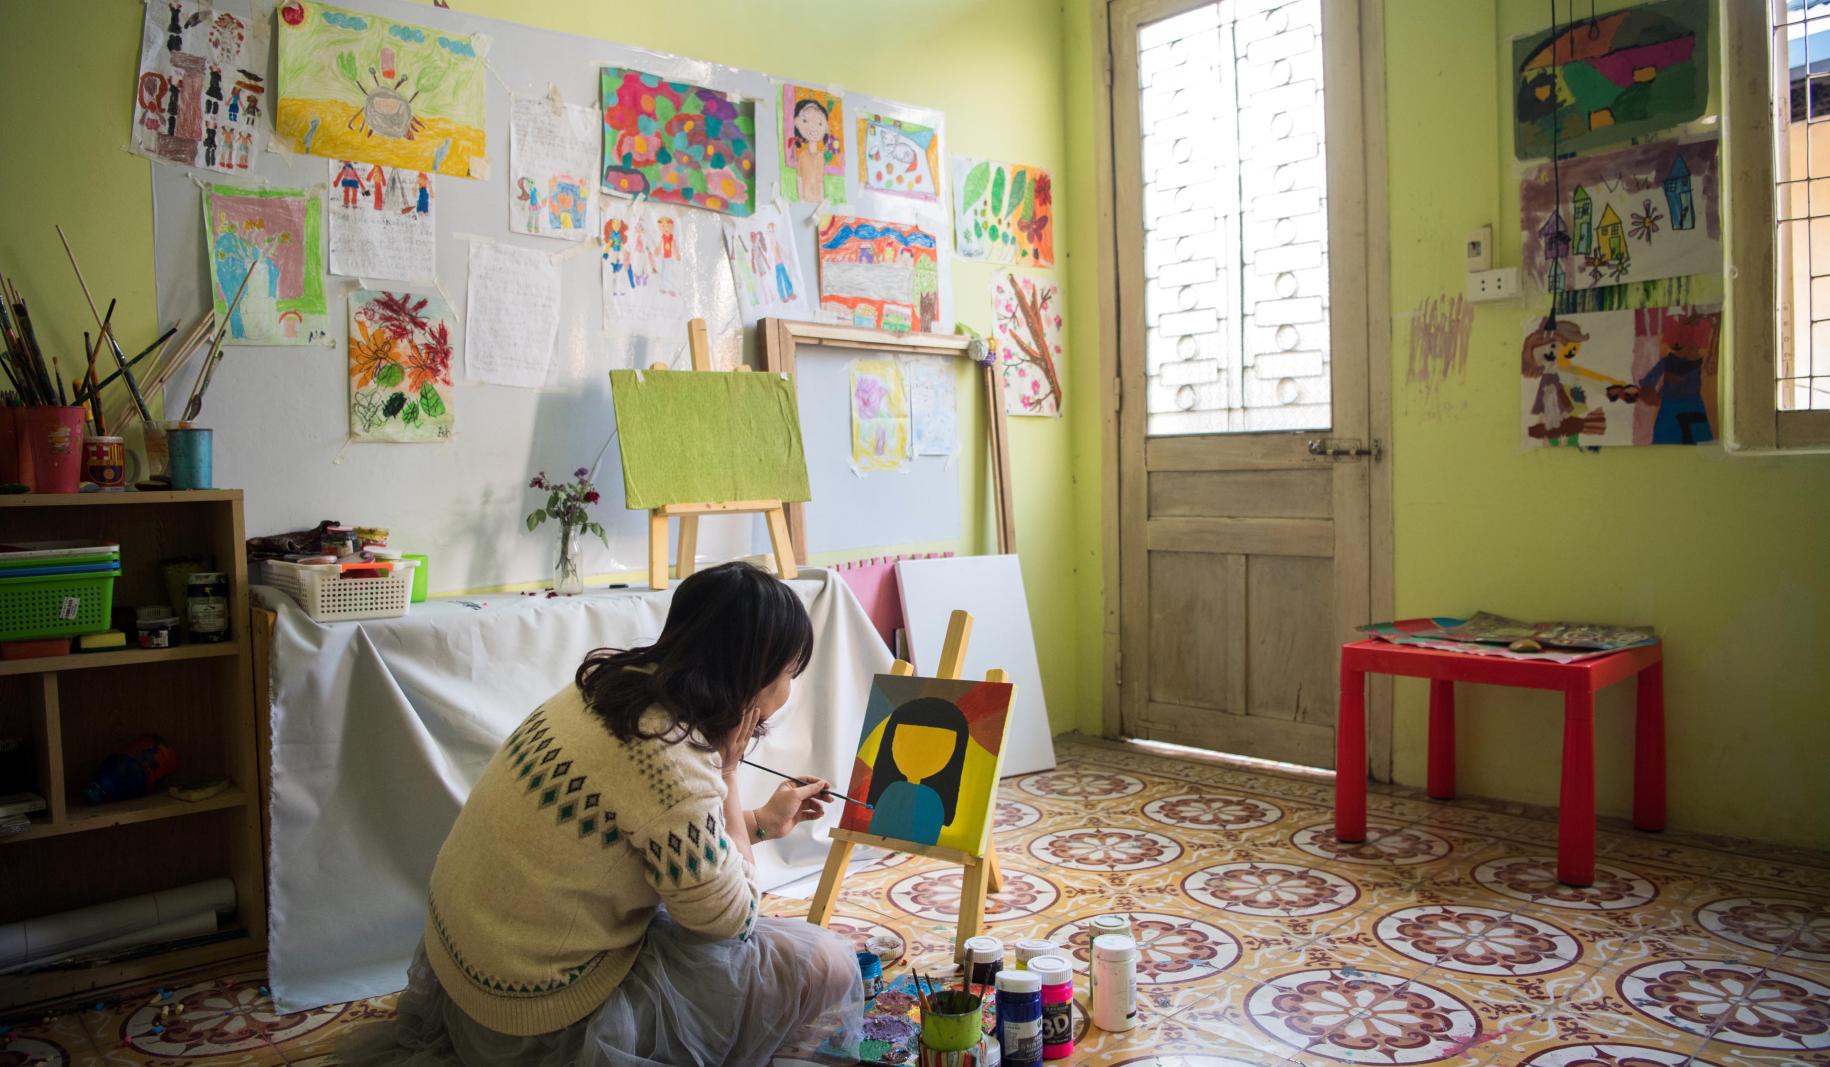 Tu Thanh Thuy se sienta en el suelo de un espacio artístico y pinta un cuadro colocado en un pequeño lienzo.